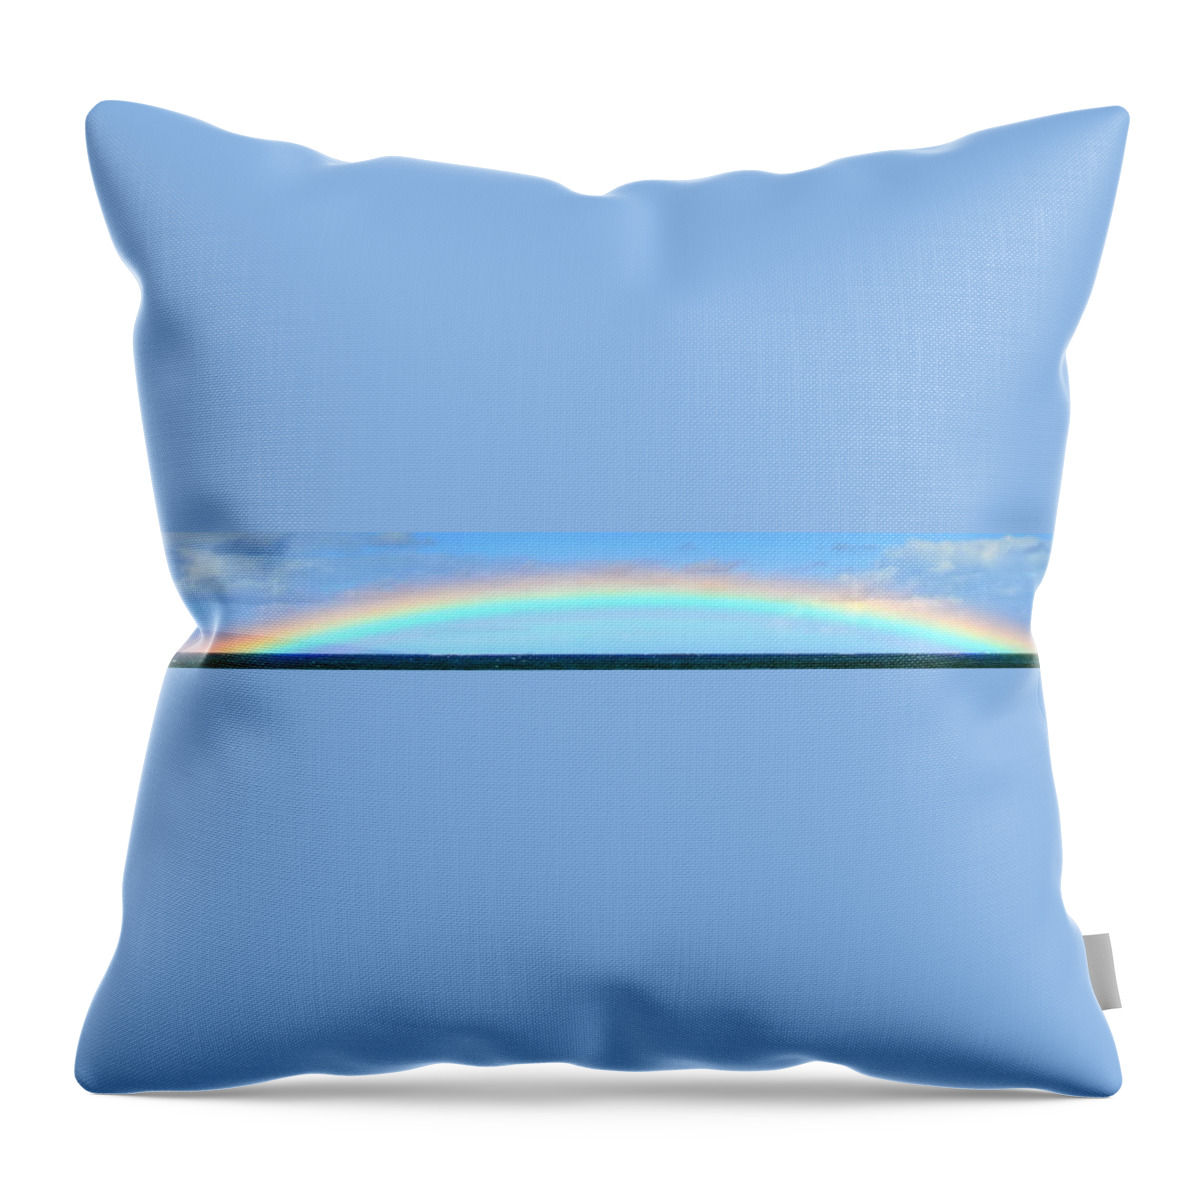 Rainbow Throw Pillow featuring the photograph Full Rainbow by Richard Omura